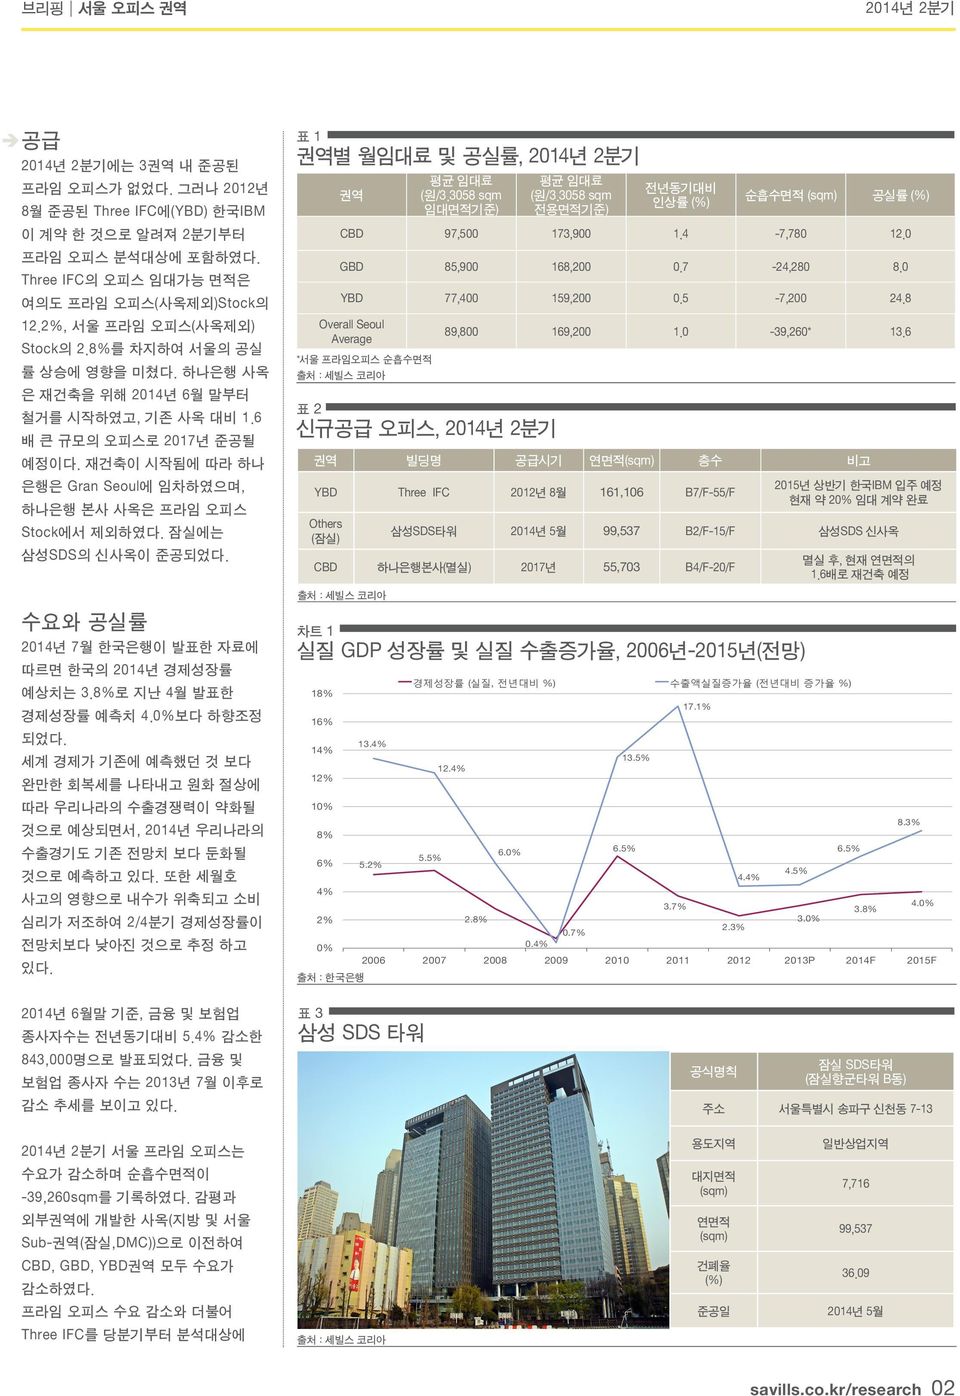 잠실에는 삼성SDS의 신사옥이 준공되었다. 수요와 공실률 2014년 7월 한국은행이 발표한 자료에 따르면 한국의 2014년 경제성장률 예상치는 3.8%로 지난 4월 발표한 경제성장률 예측치 4.0%보다 하향조정 되었다.